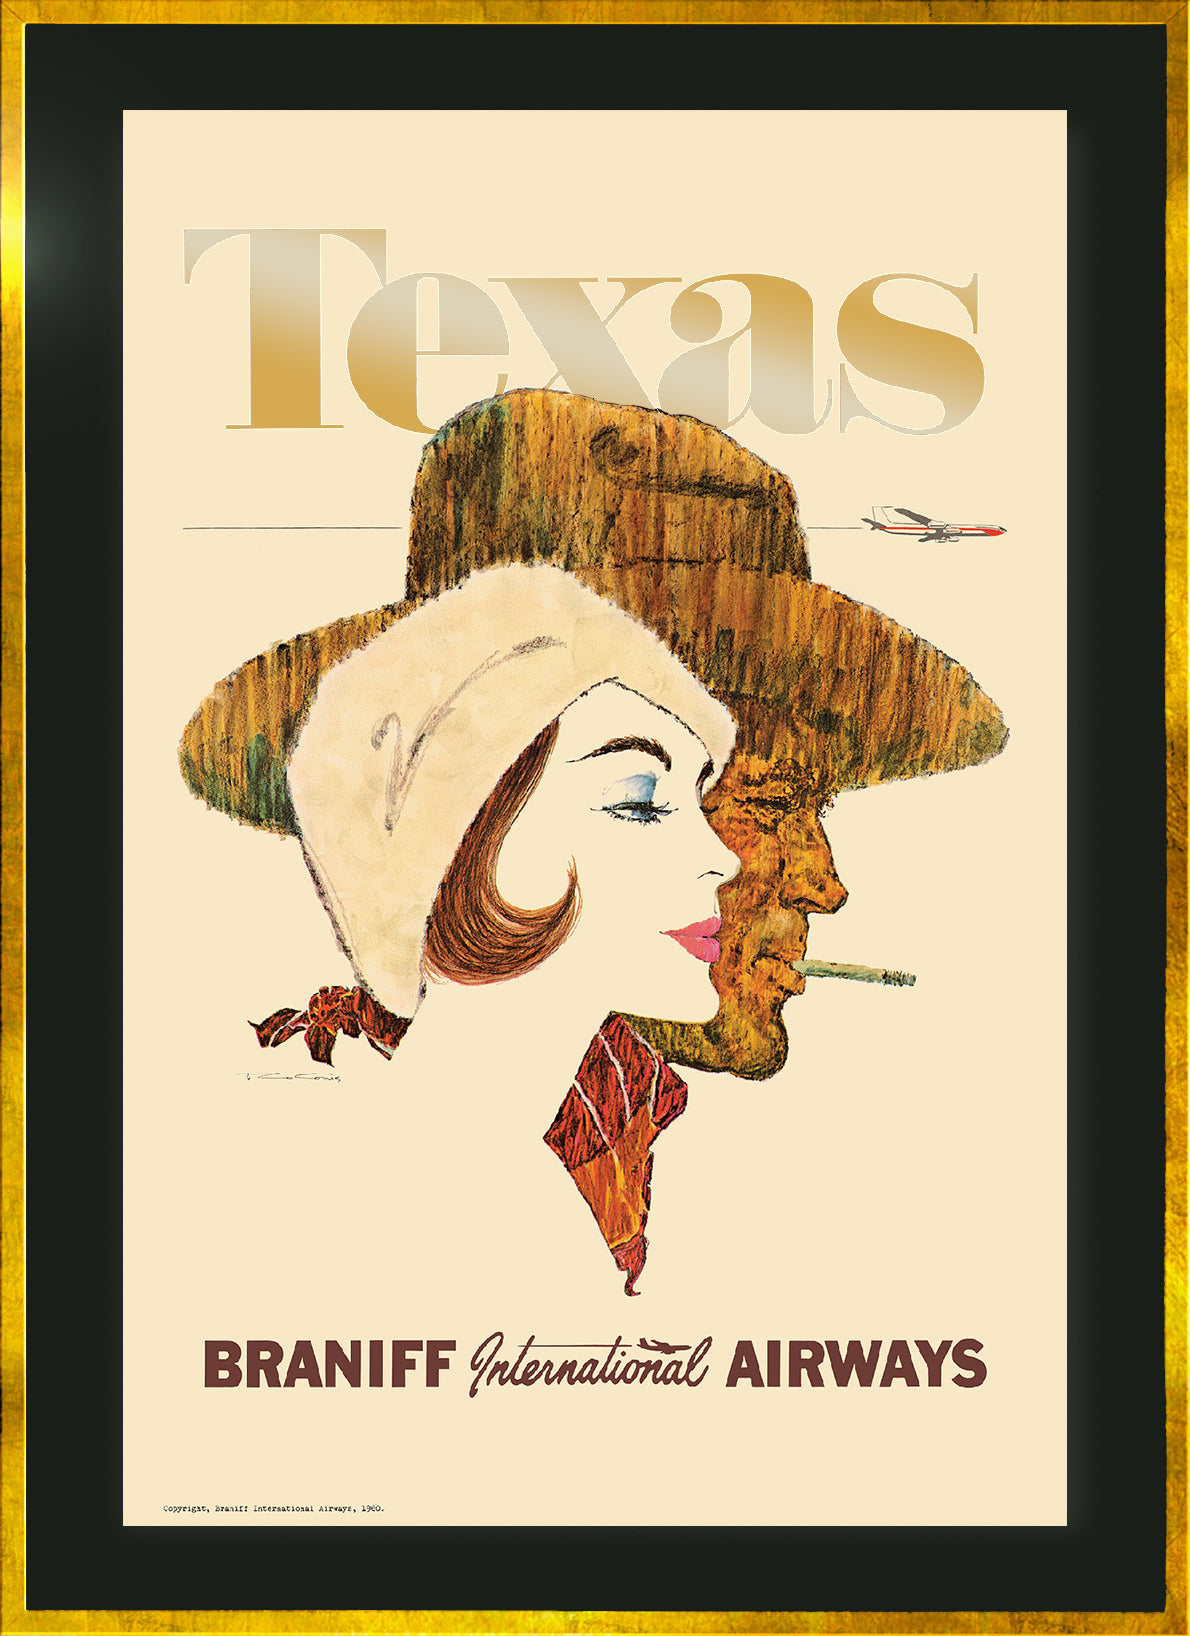 Texas, Braniff - United, 1960s [Couple].